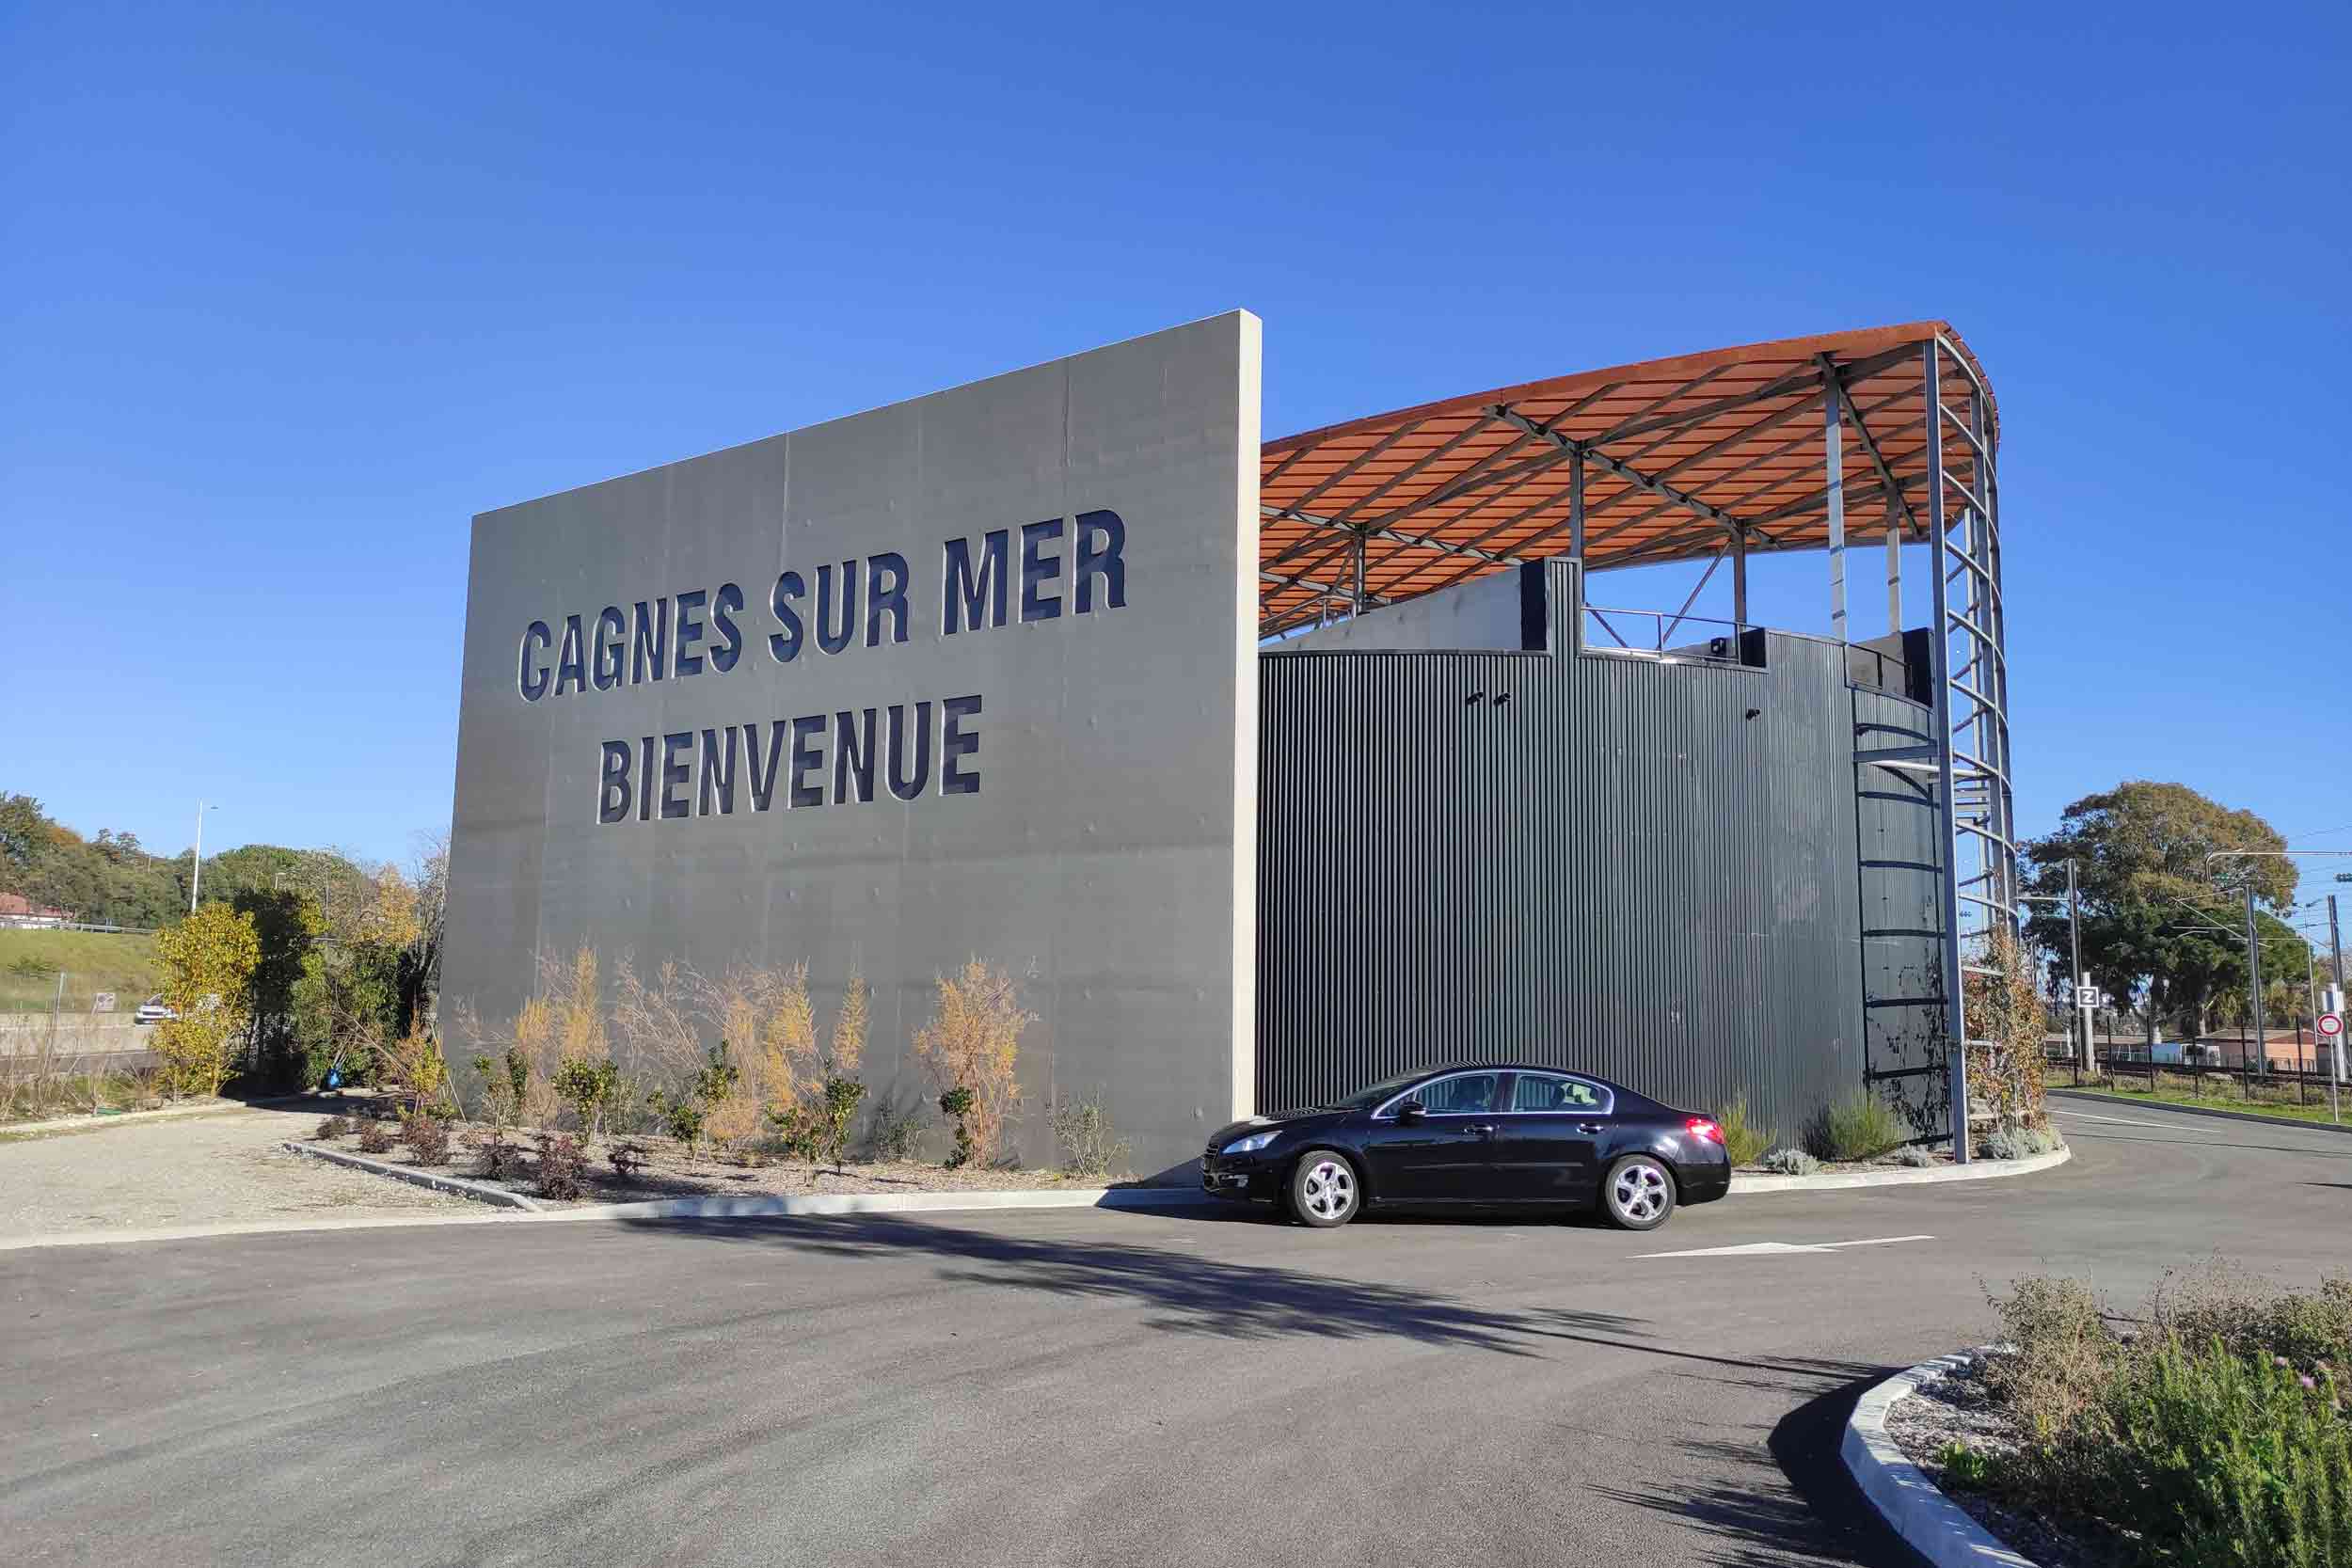 STATION D’ÉPURATION CHARPENTE METALLIQUE MENUISERIES (Cagnes-sur-mer) - ABB Construction